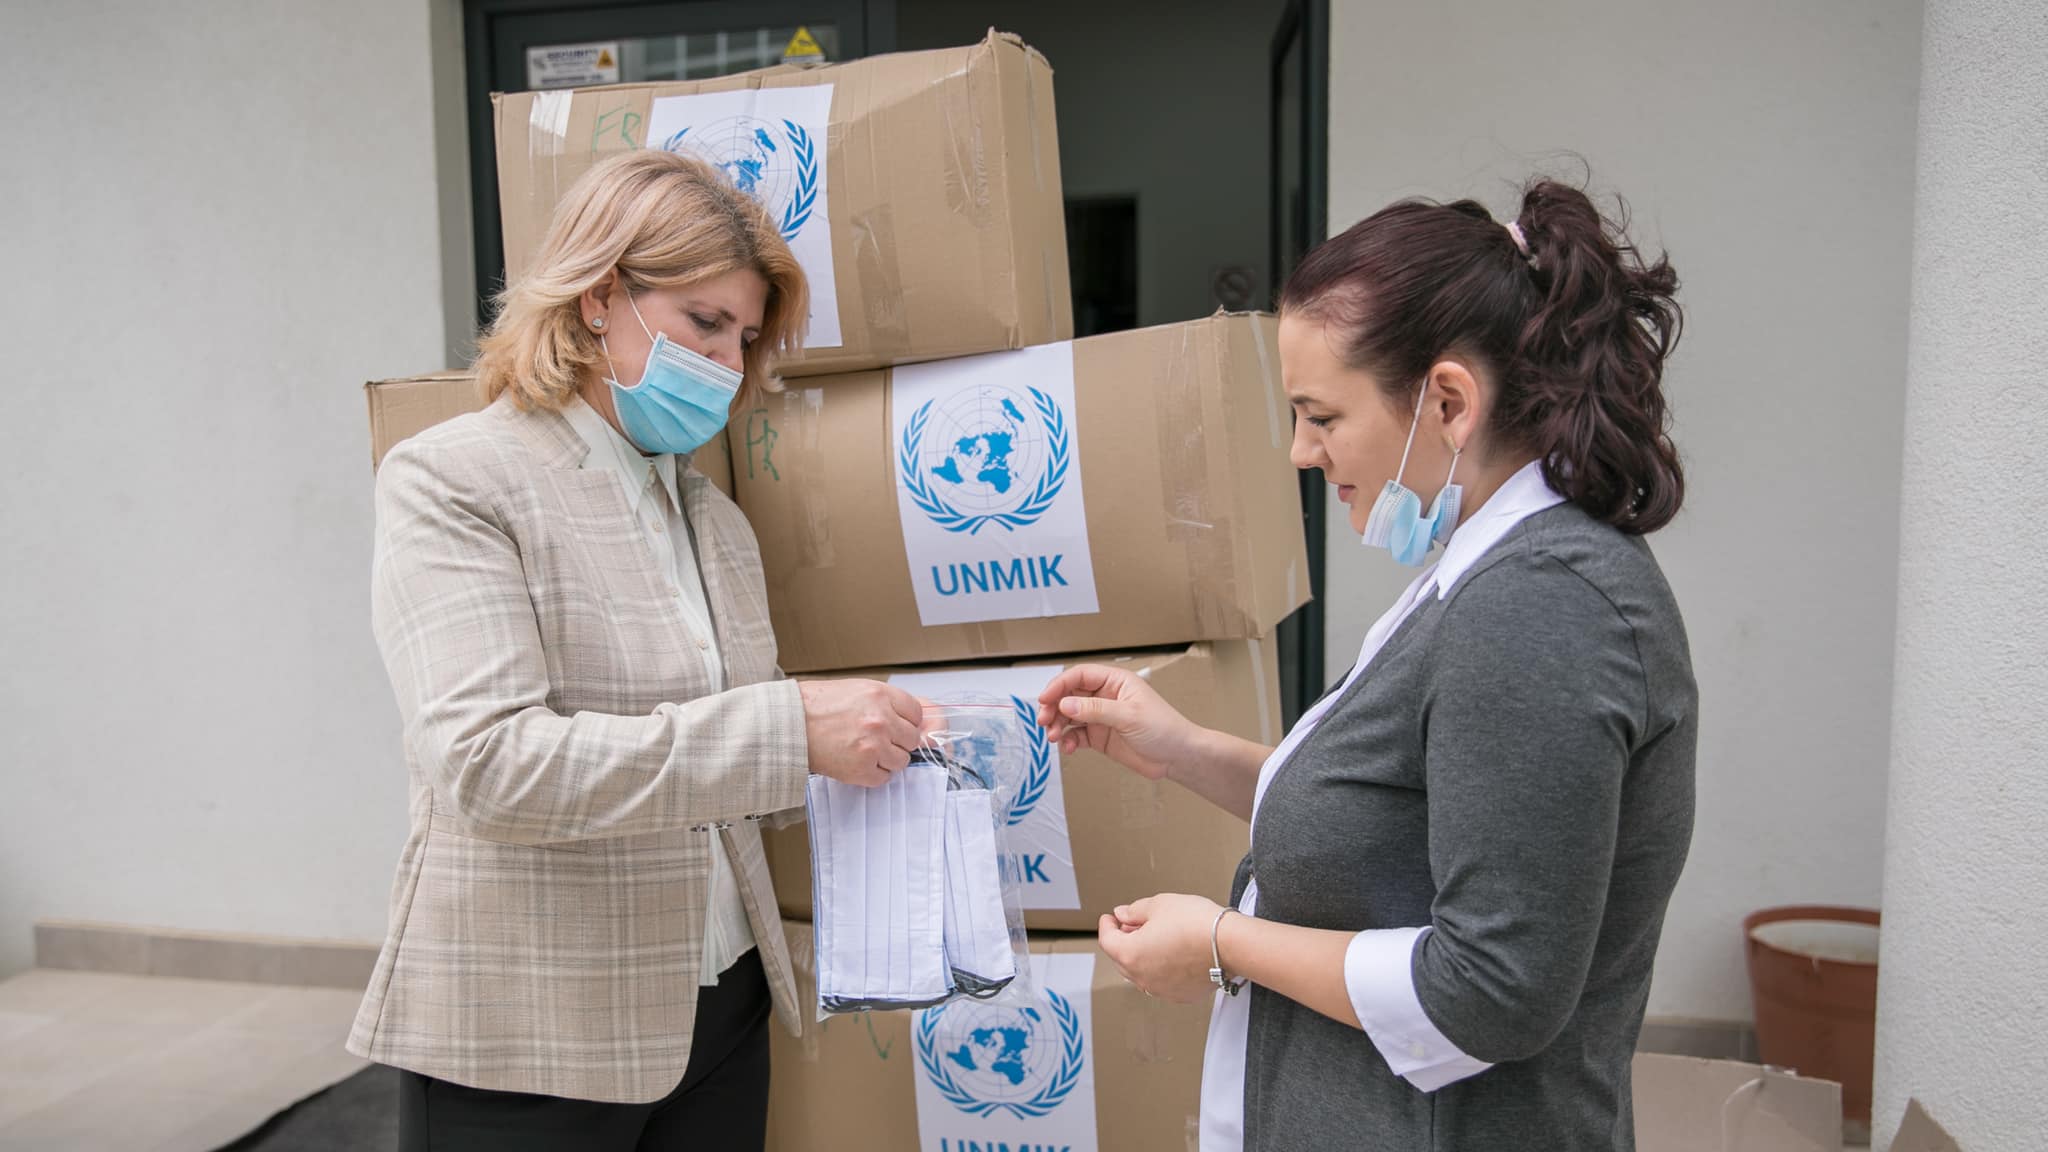 200553286 4172771939435276 6449991397915883022 n - QKMF pranoi 10,000 maska donacion nga Misioni i Kombeve të Bashkuara në Kosovë